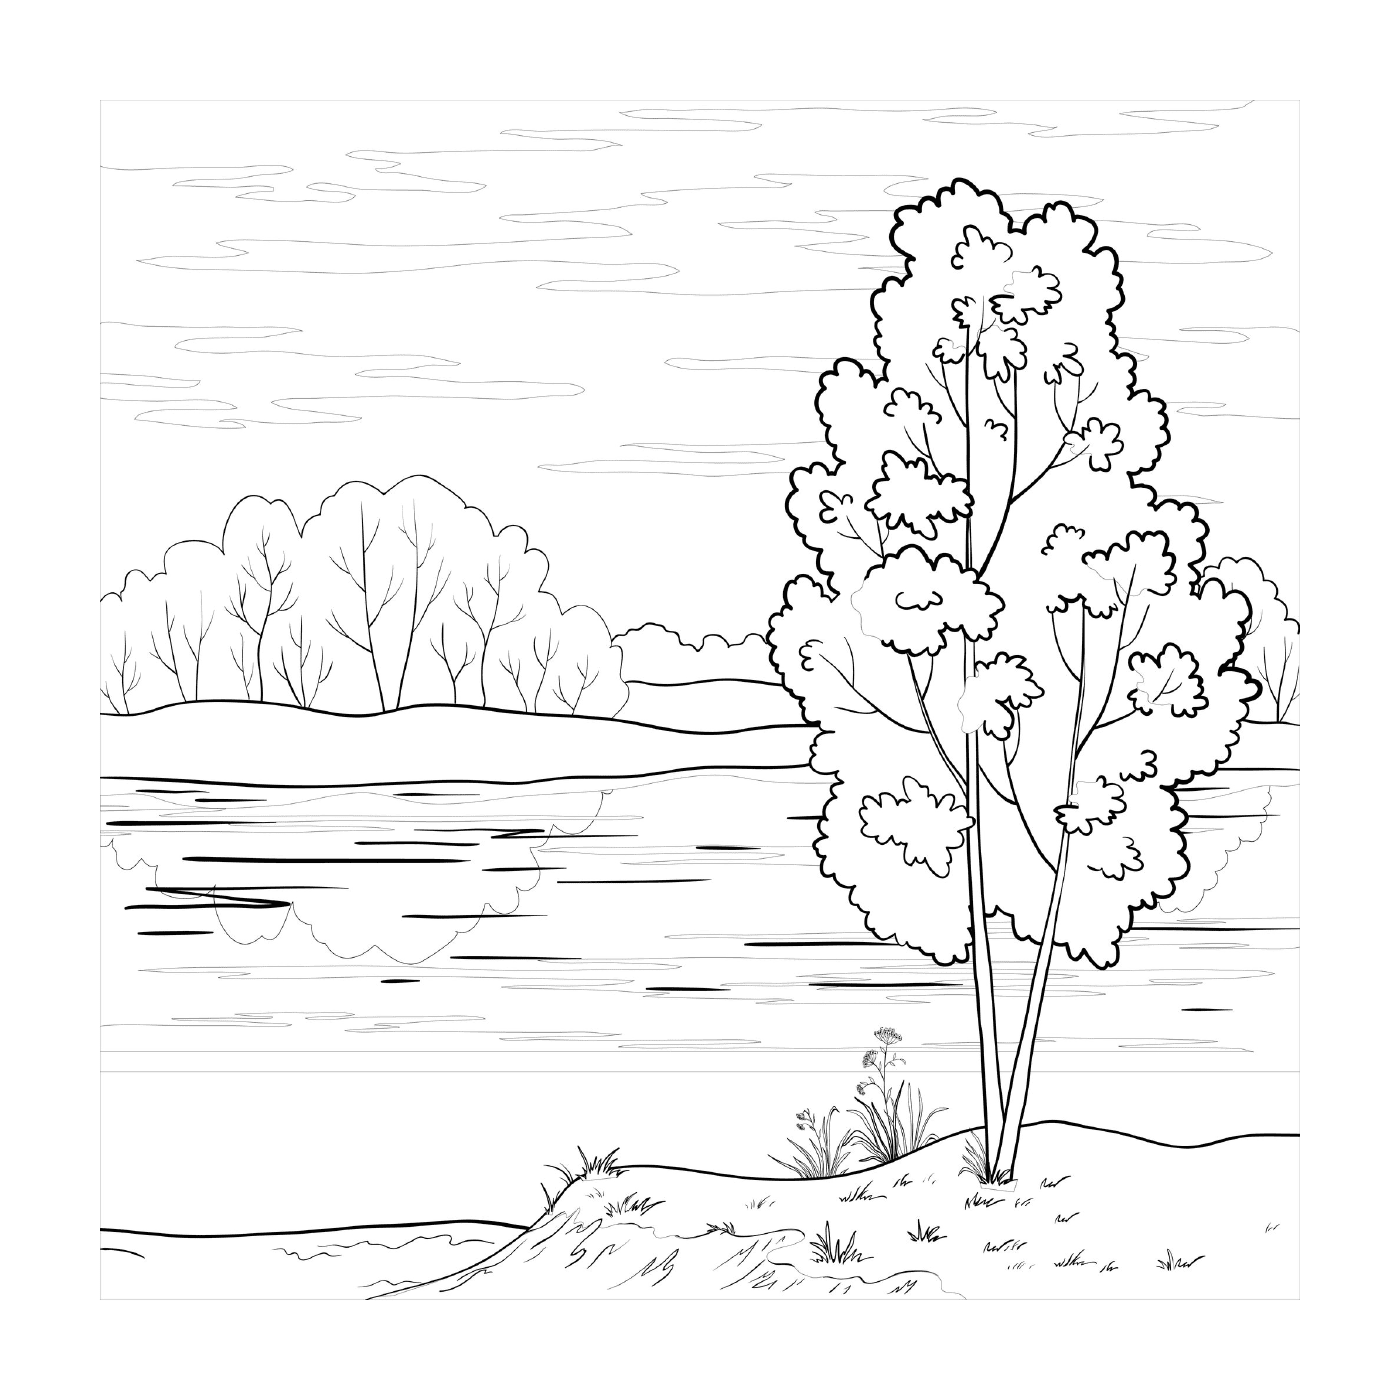  Un albero vicino ad un lago 